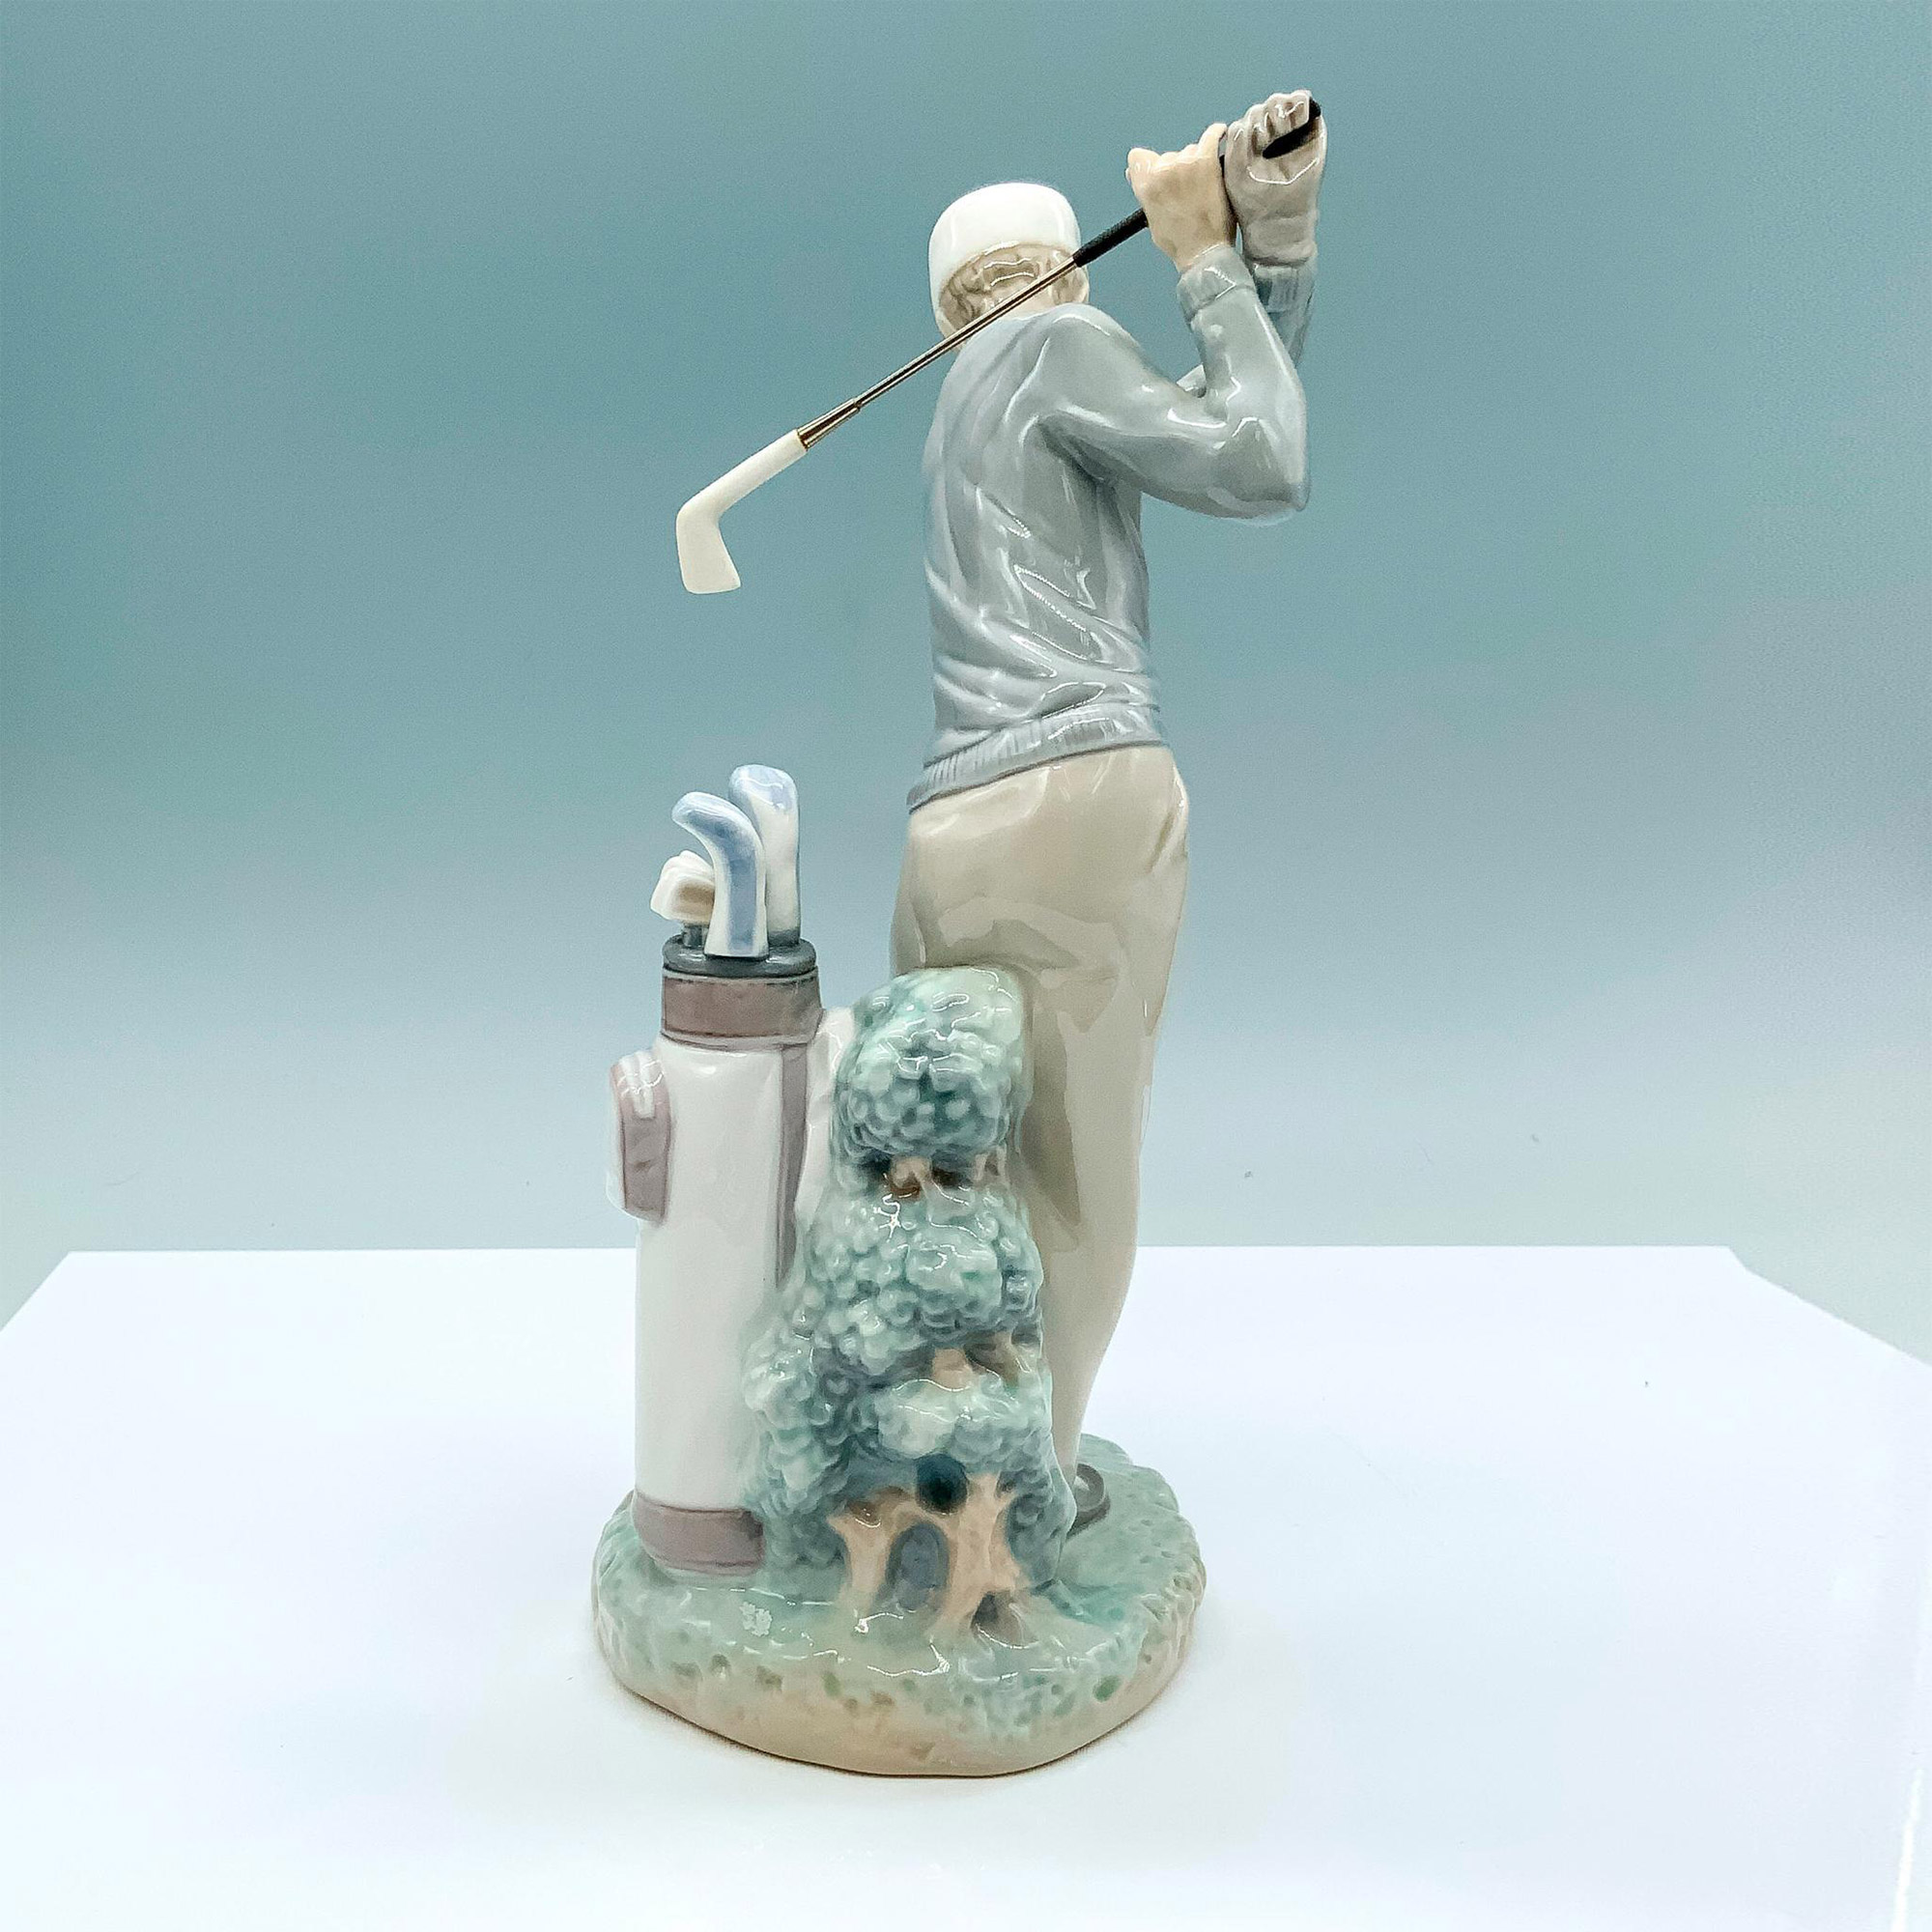 Golfer 1004824 - Lladro Porcelain Figurine - Image 2 of 5